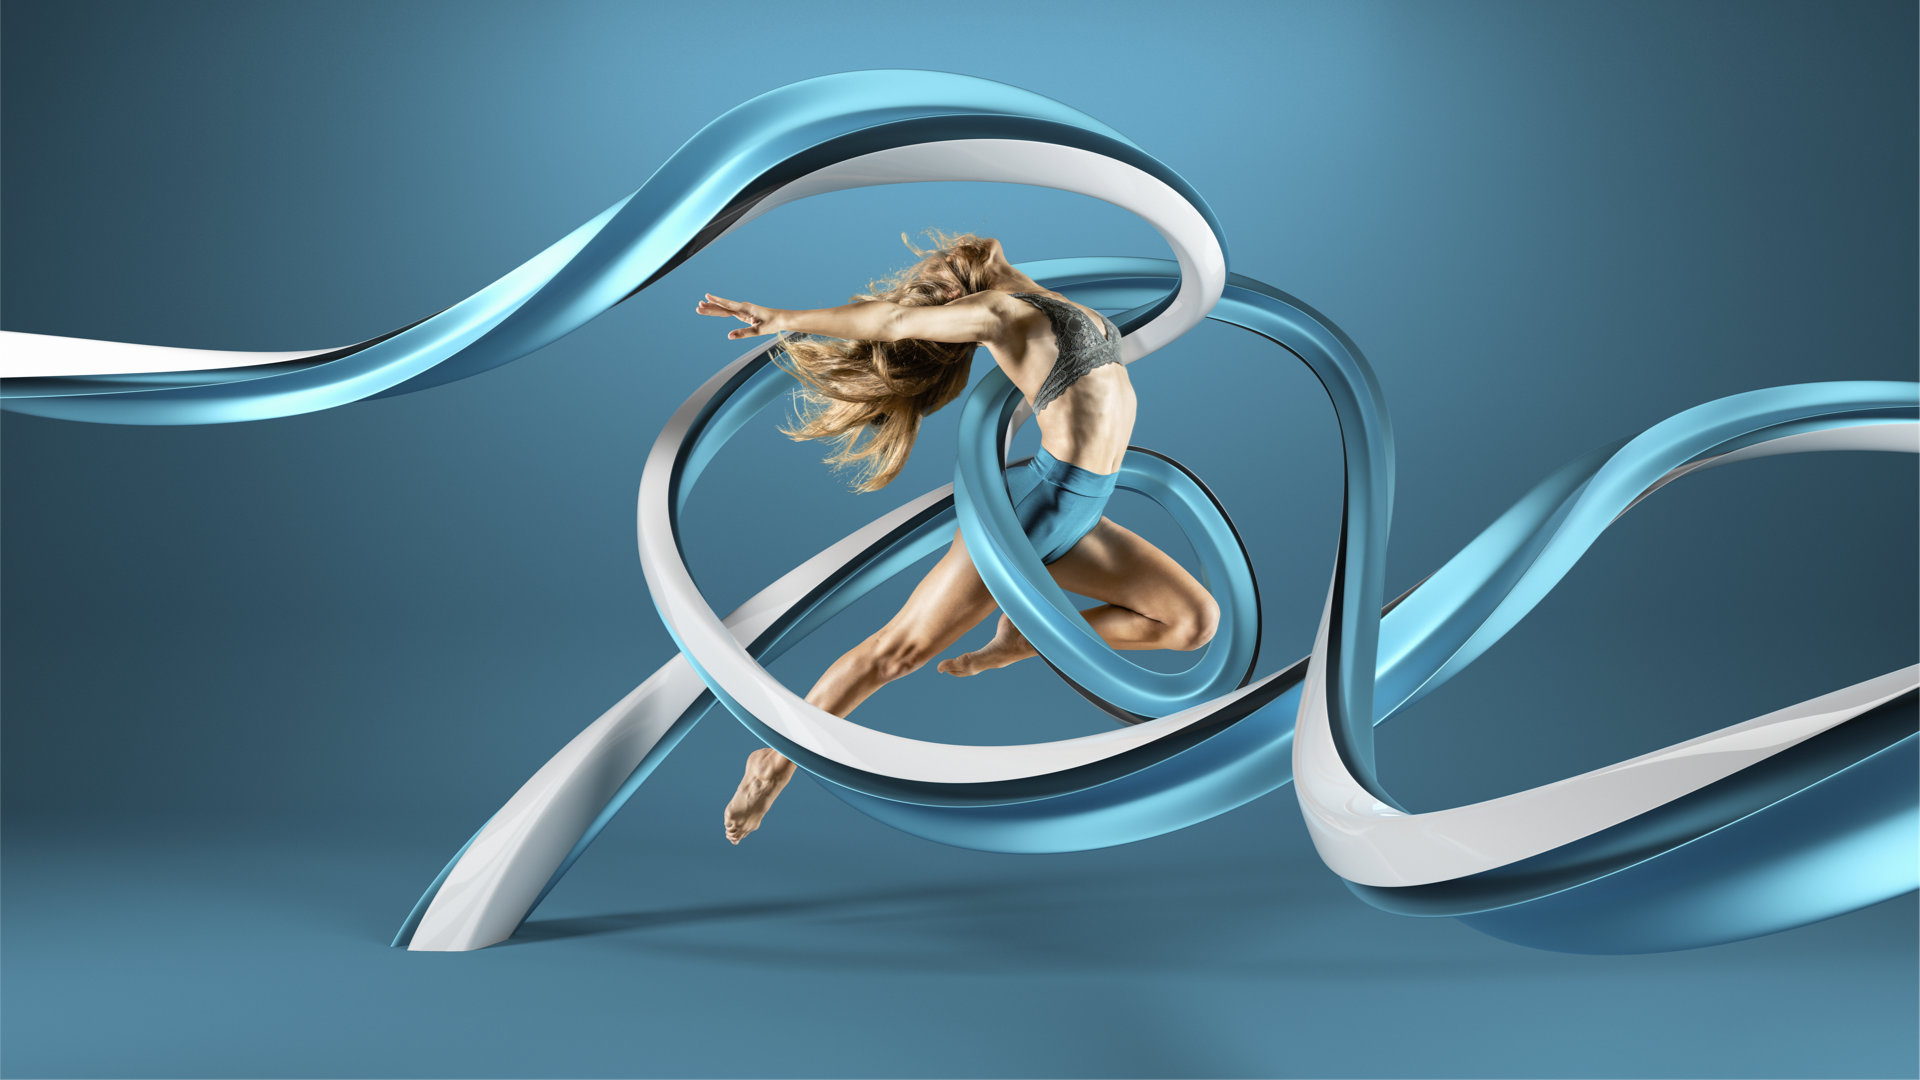 3D-Illustration einer Tänzerin mit verschlungenem Band.